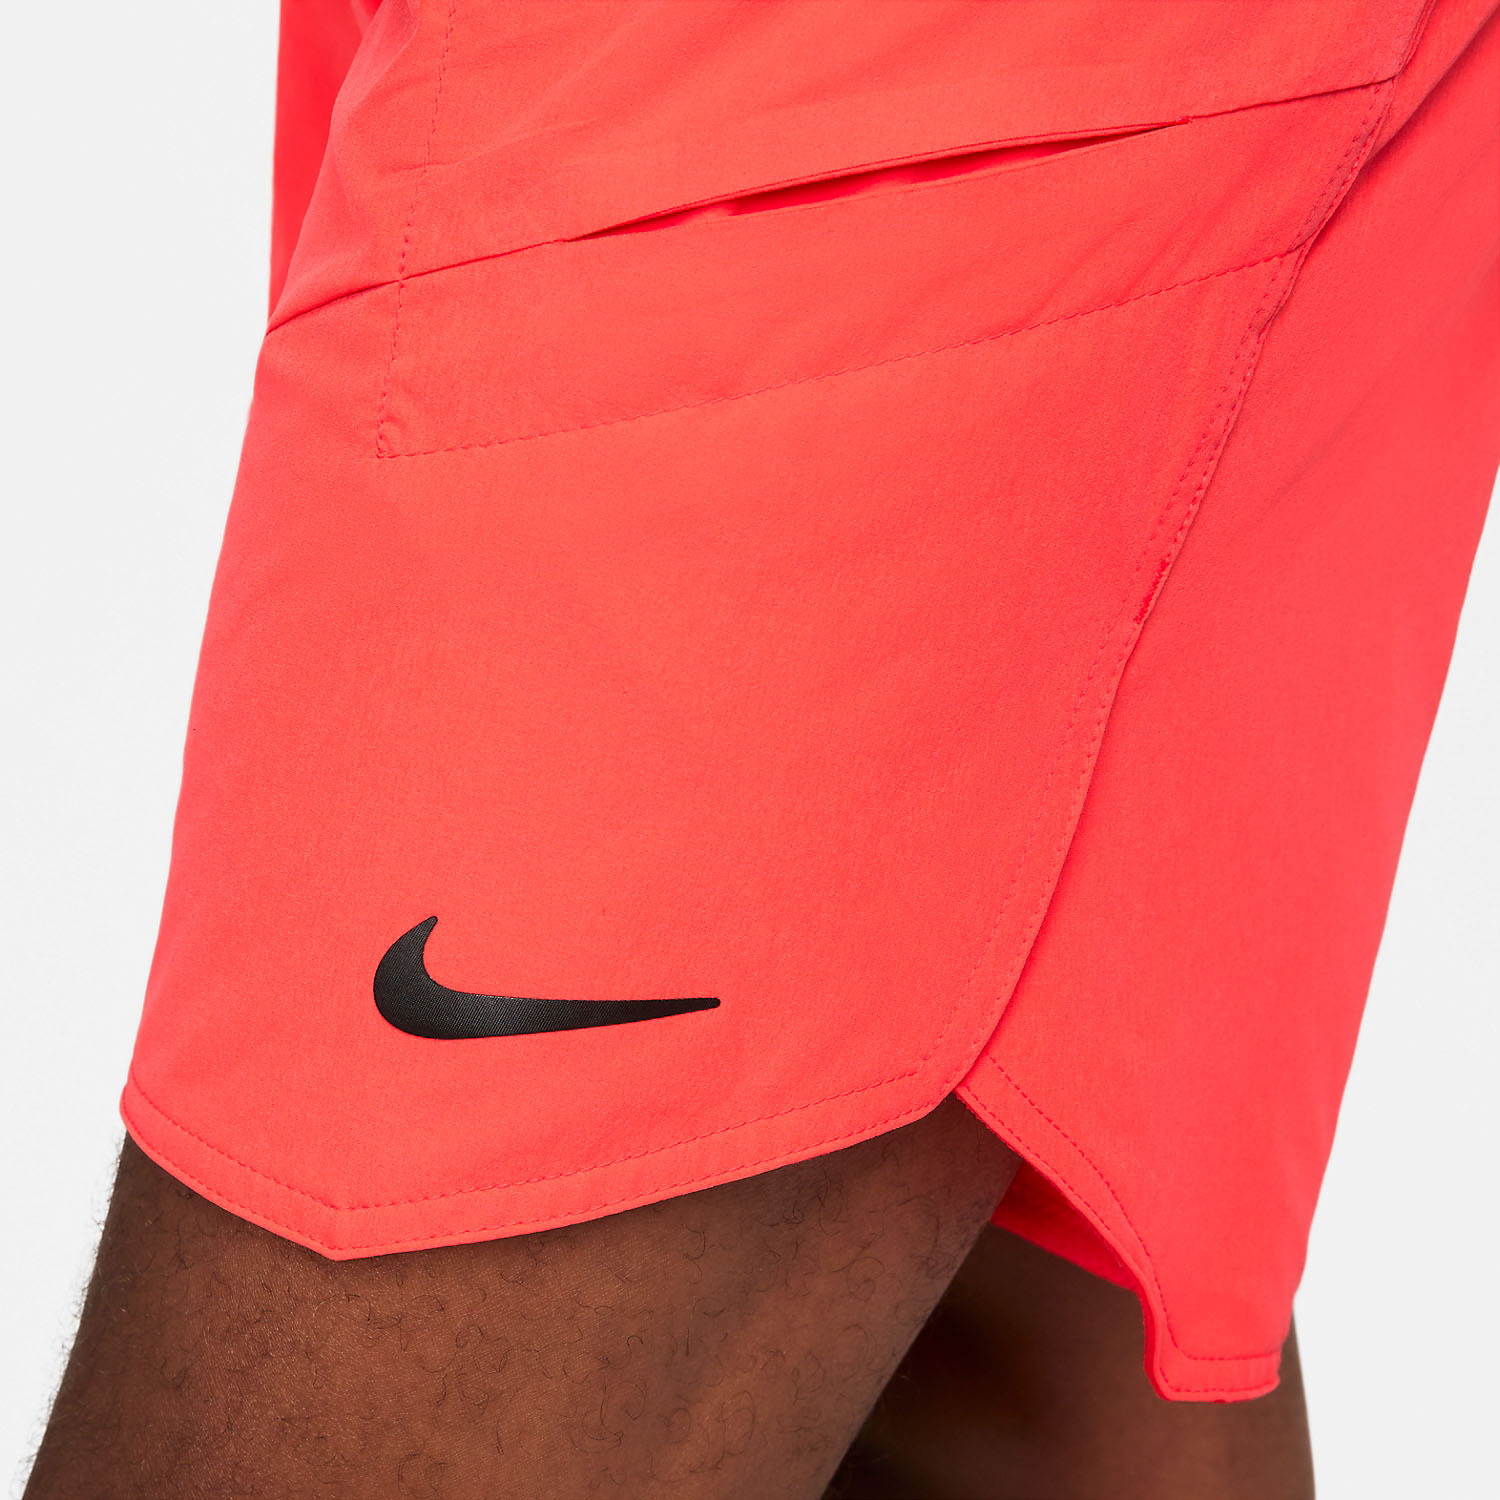 ik zal sterk zijn Onderzoek Maak het zwaar Nike Dri-FIT Advantage 9in Men's Tennis Shorts - Bright Crimson